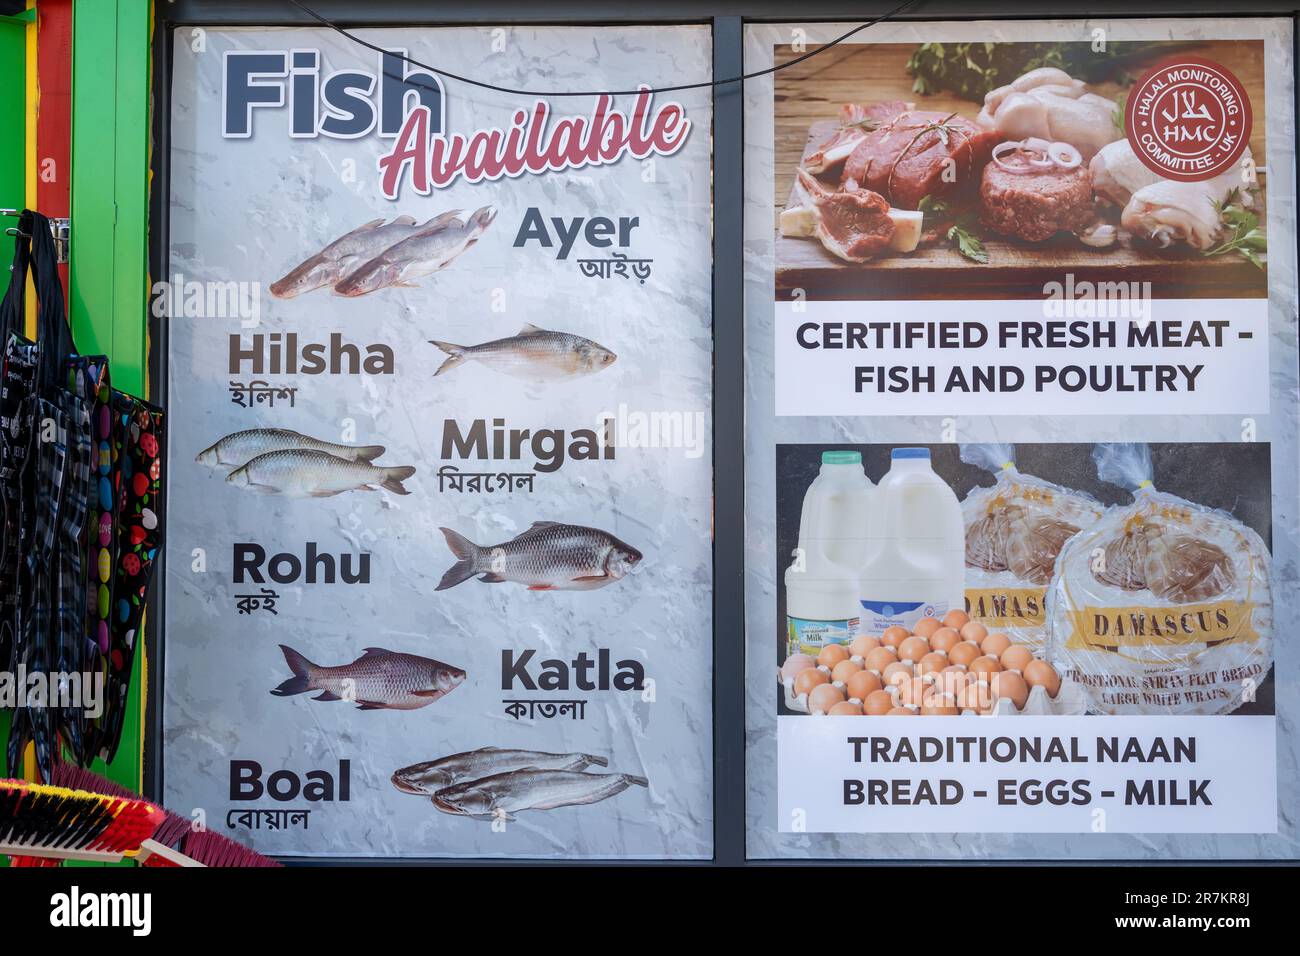 Un cartello all'esterno di un negozio mostra i pesci disponibili - Ayer, Hilsha, Mirgal, Rohu, Katla e Boal, così come carne halal. Newcastle upon Tyne, Regno Unito. Foto Stock